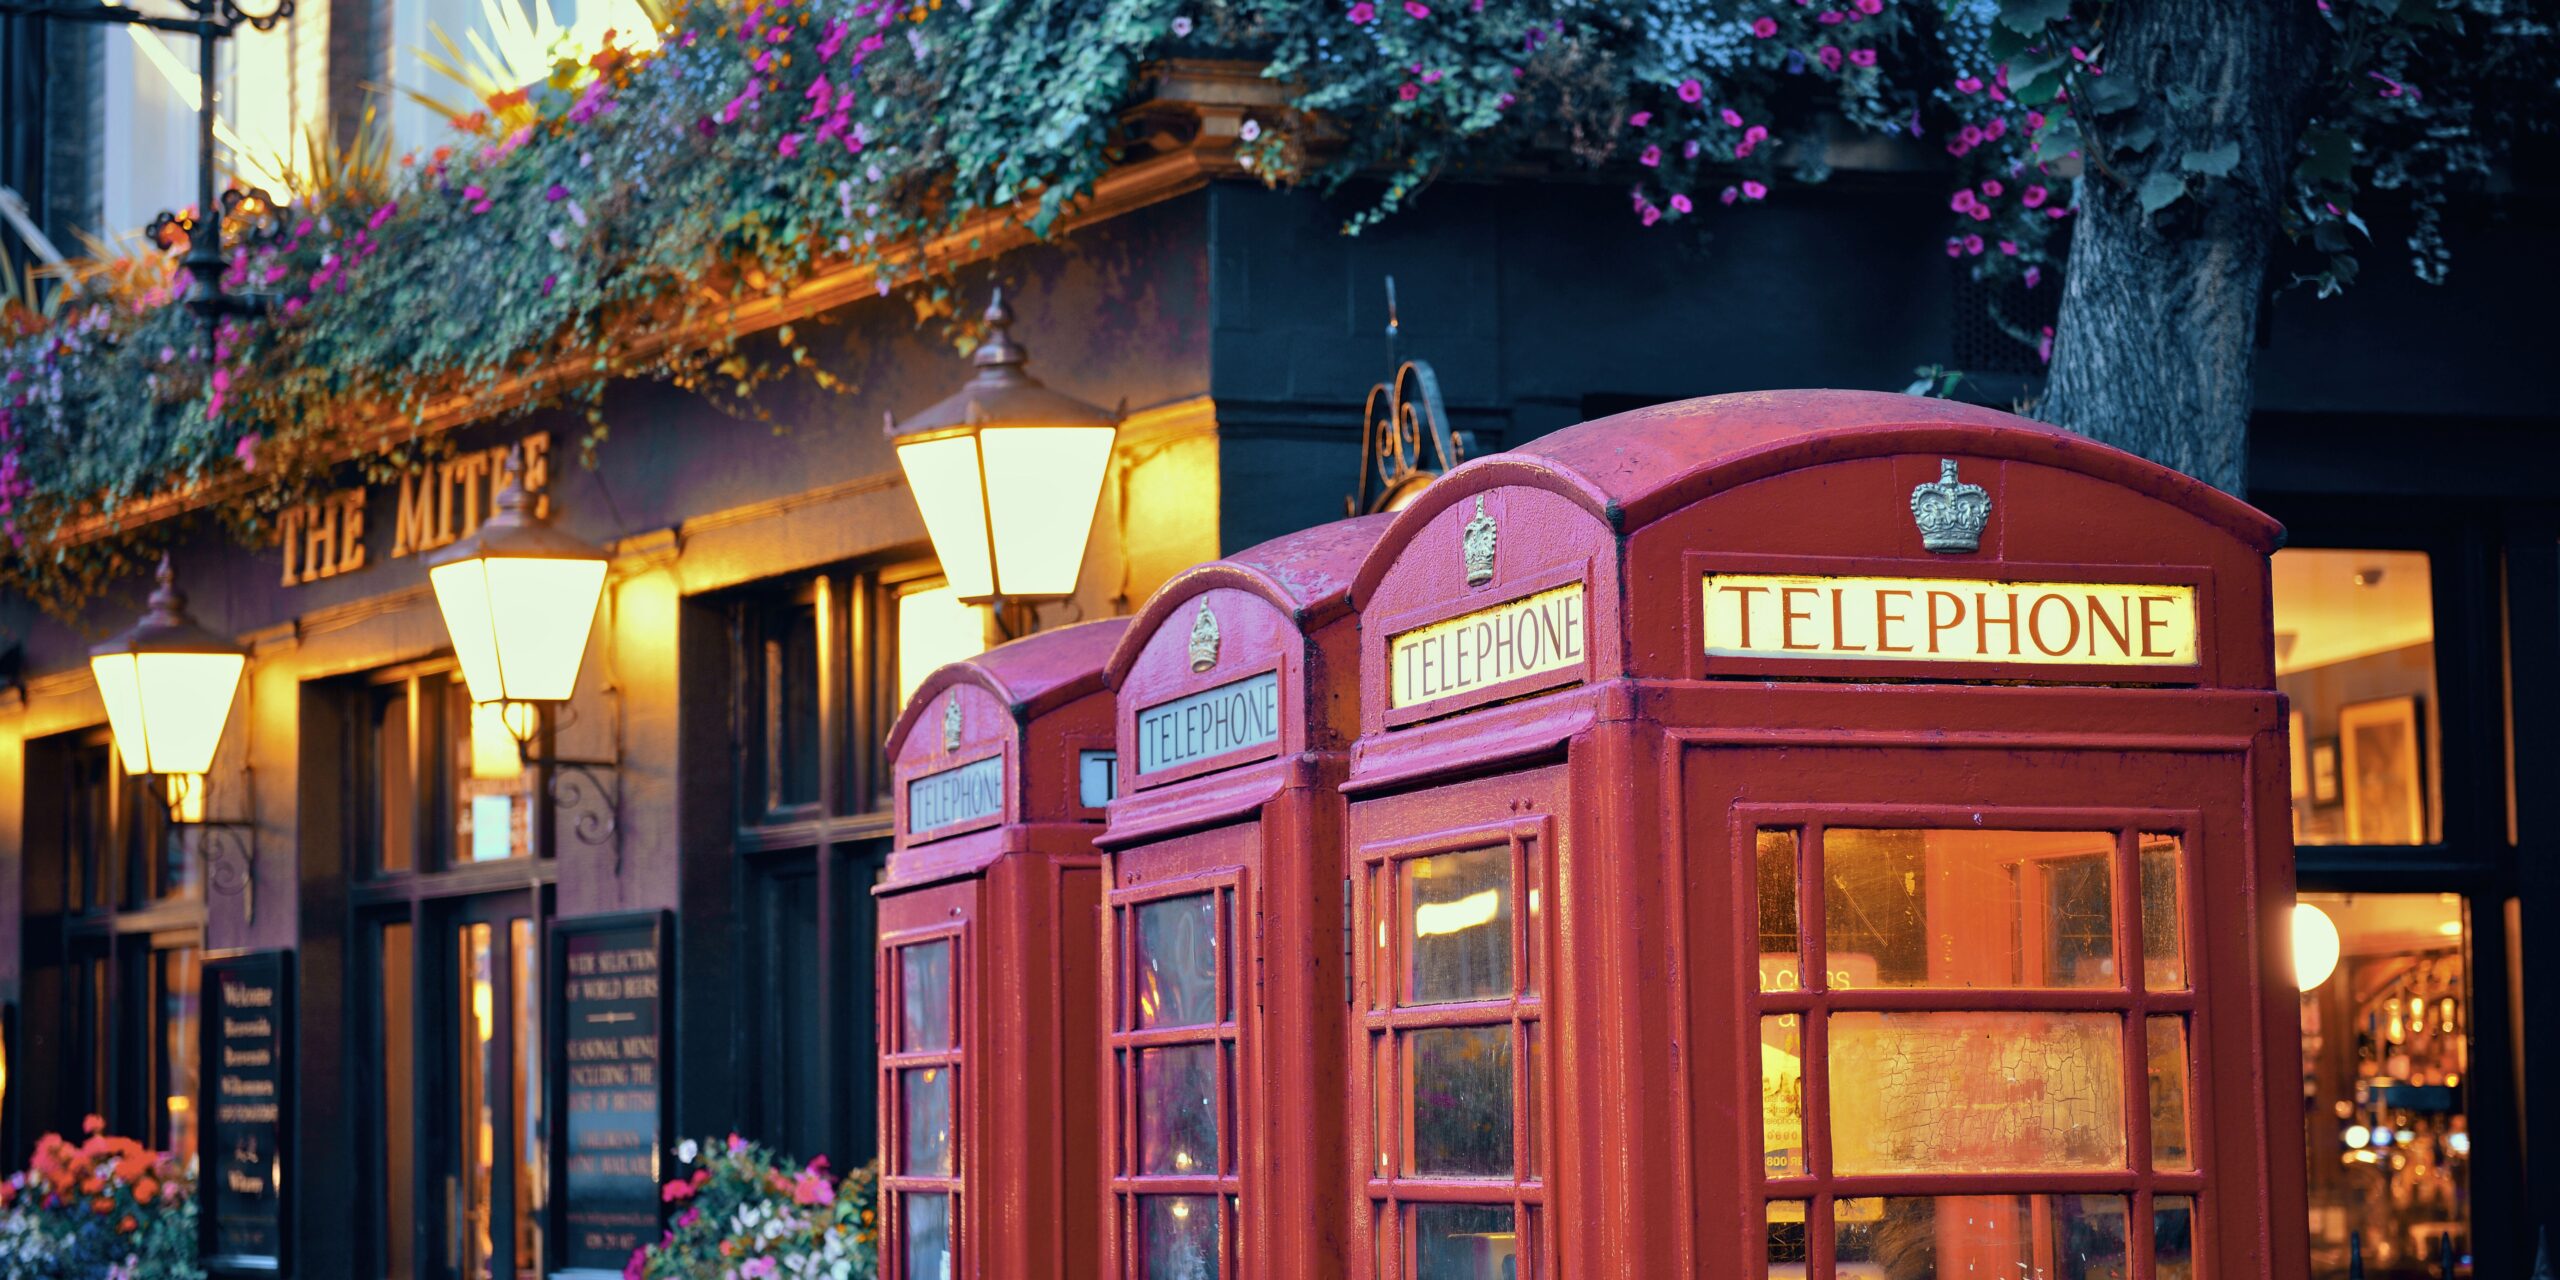 Les cabines téléphoniques rouges, typiques de Londres